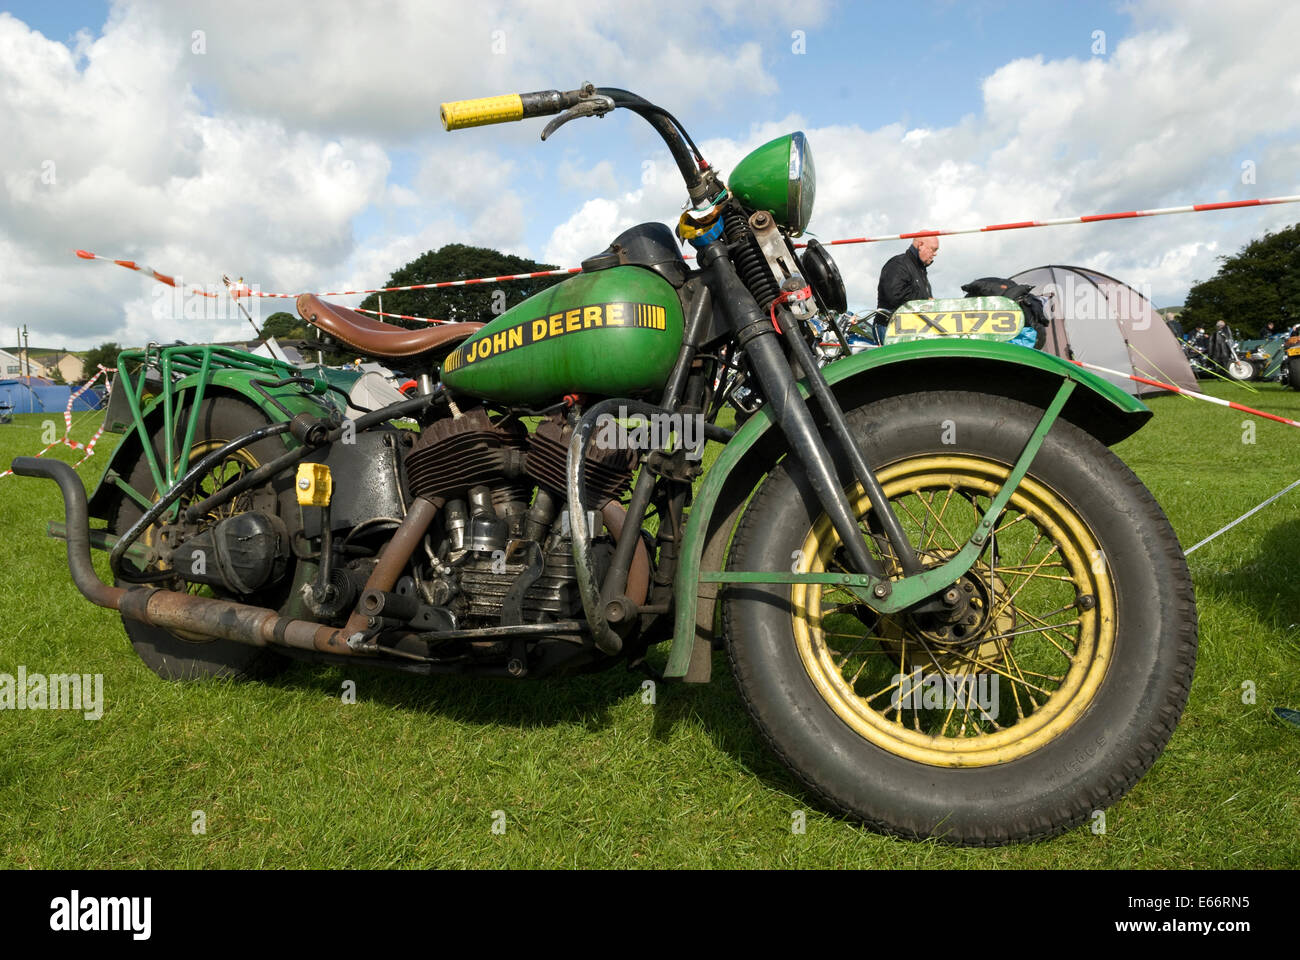 John Deere old vintage motorcycle. Stock Photo